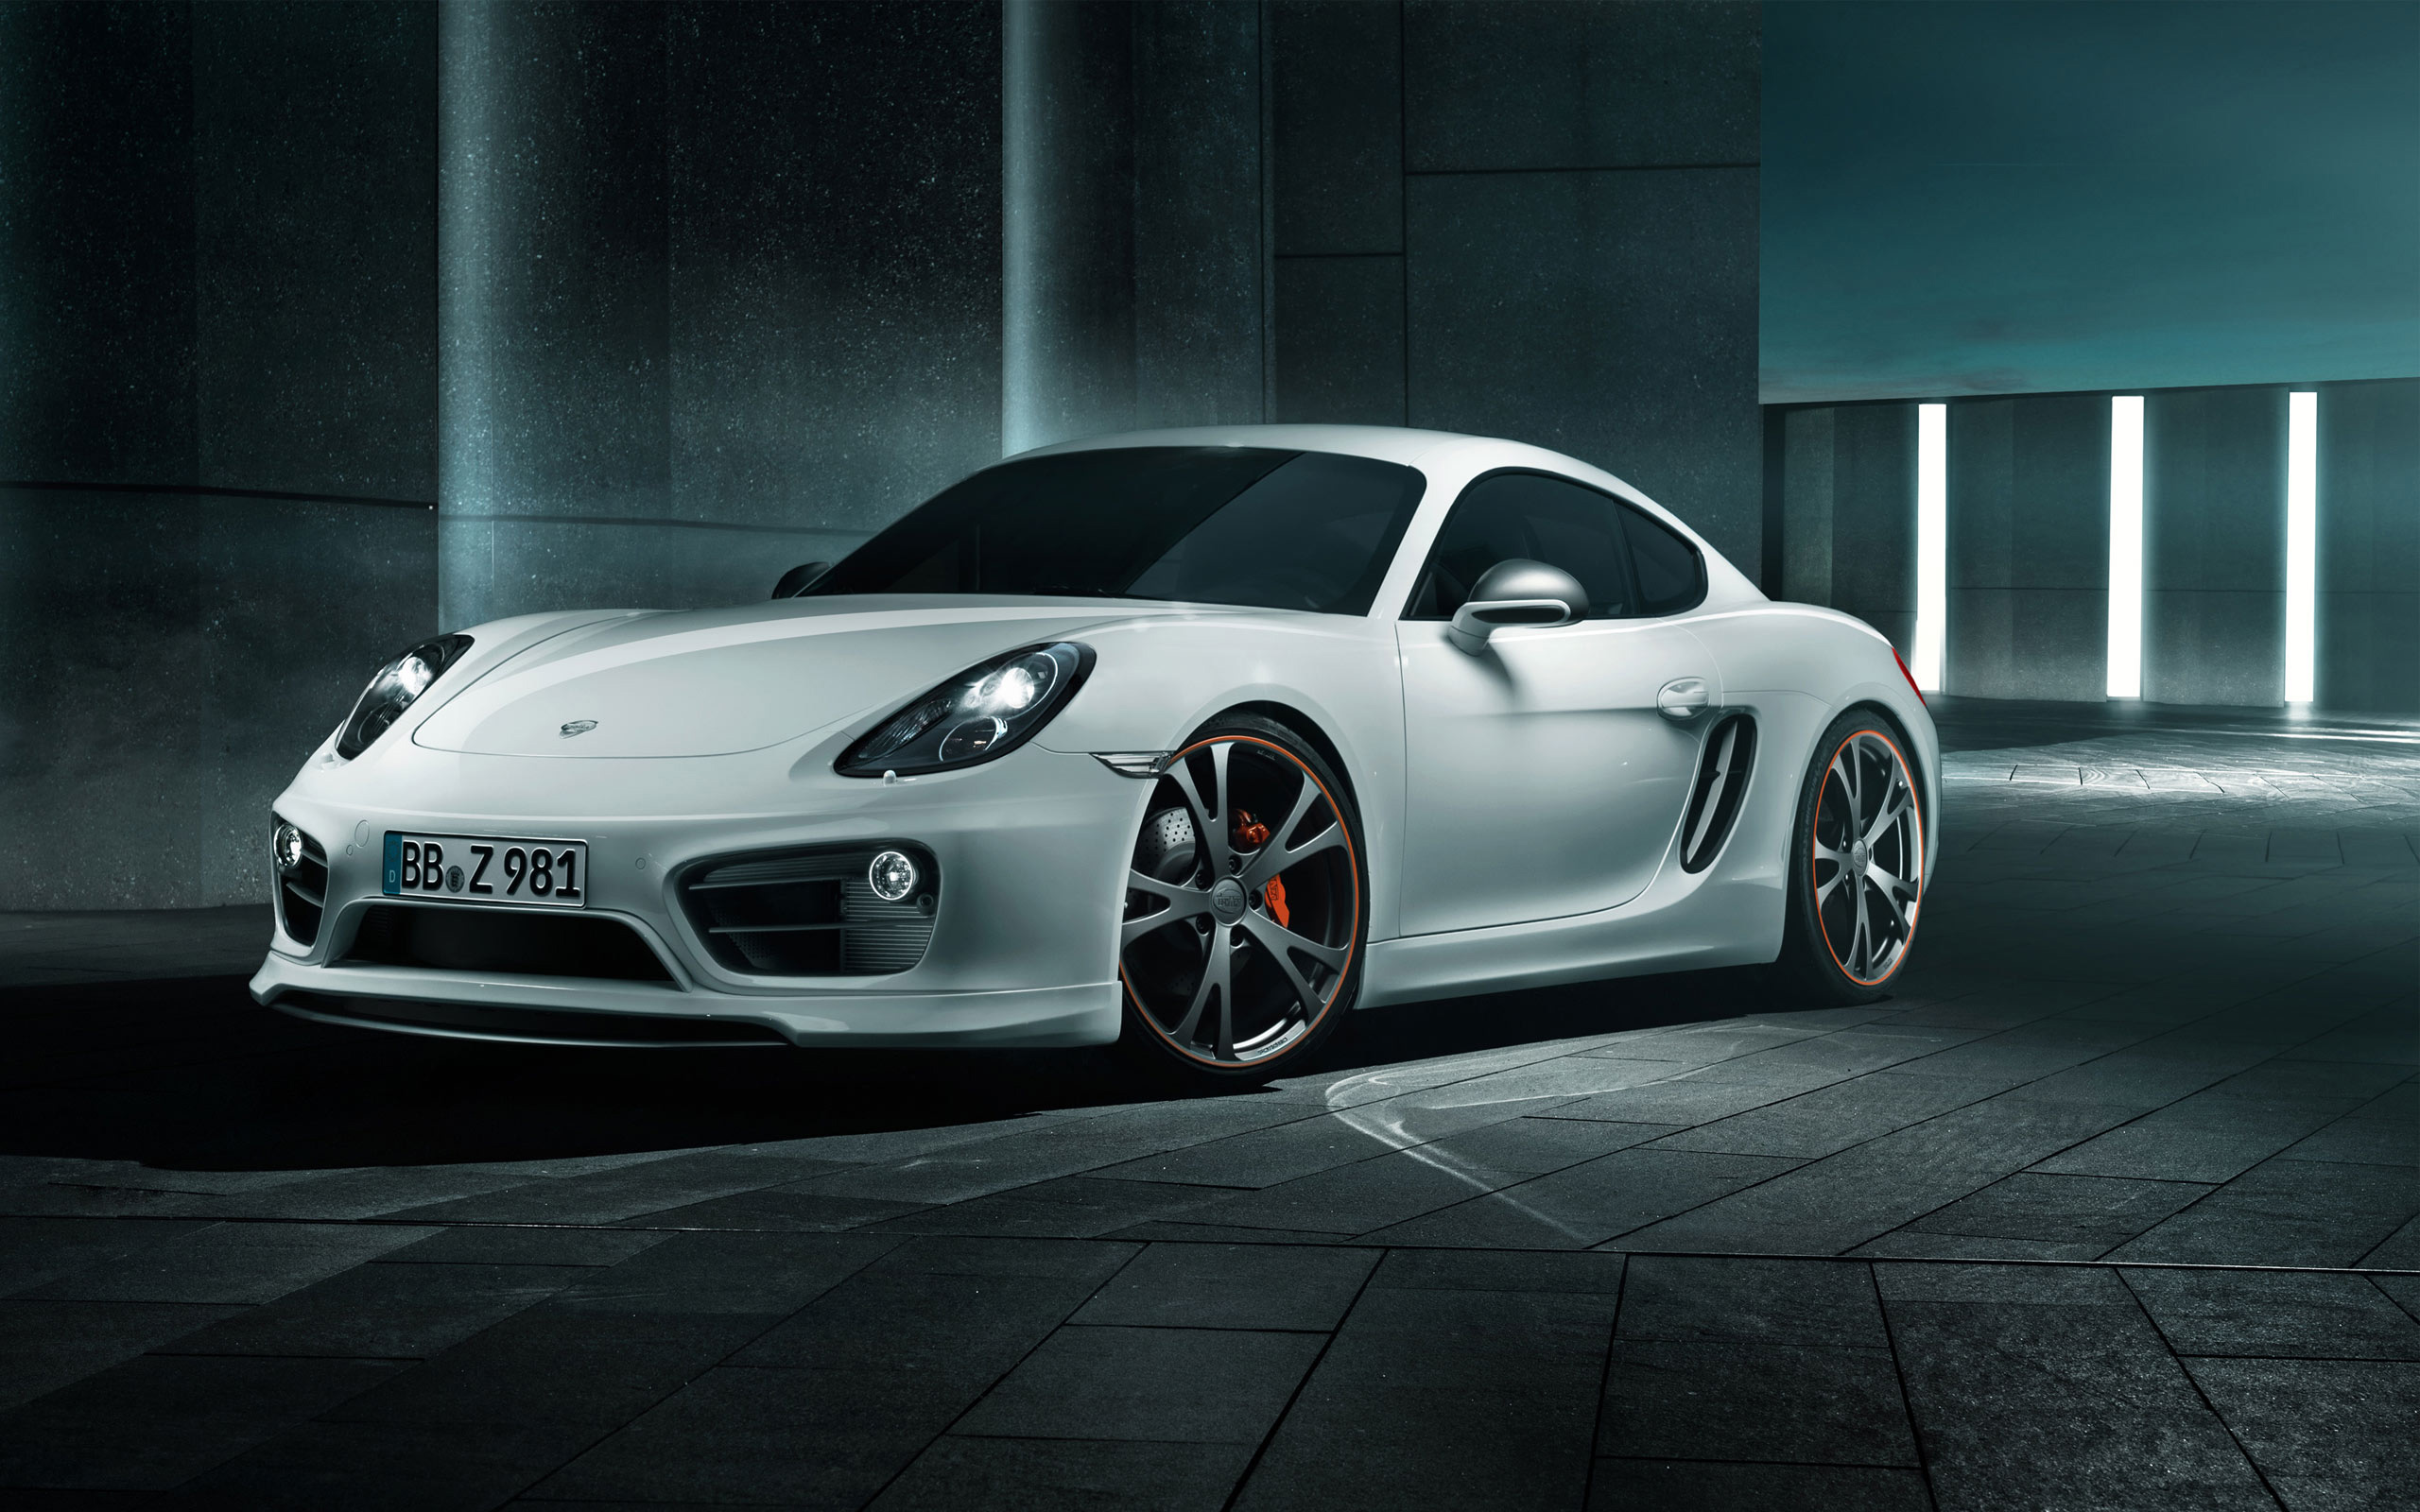 2013 Porsche Cayman by Techart Wallpapers HD Wallpapers